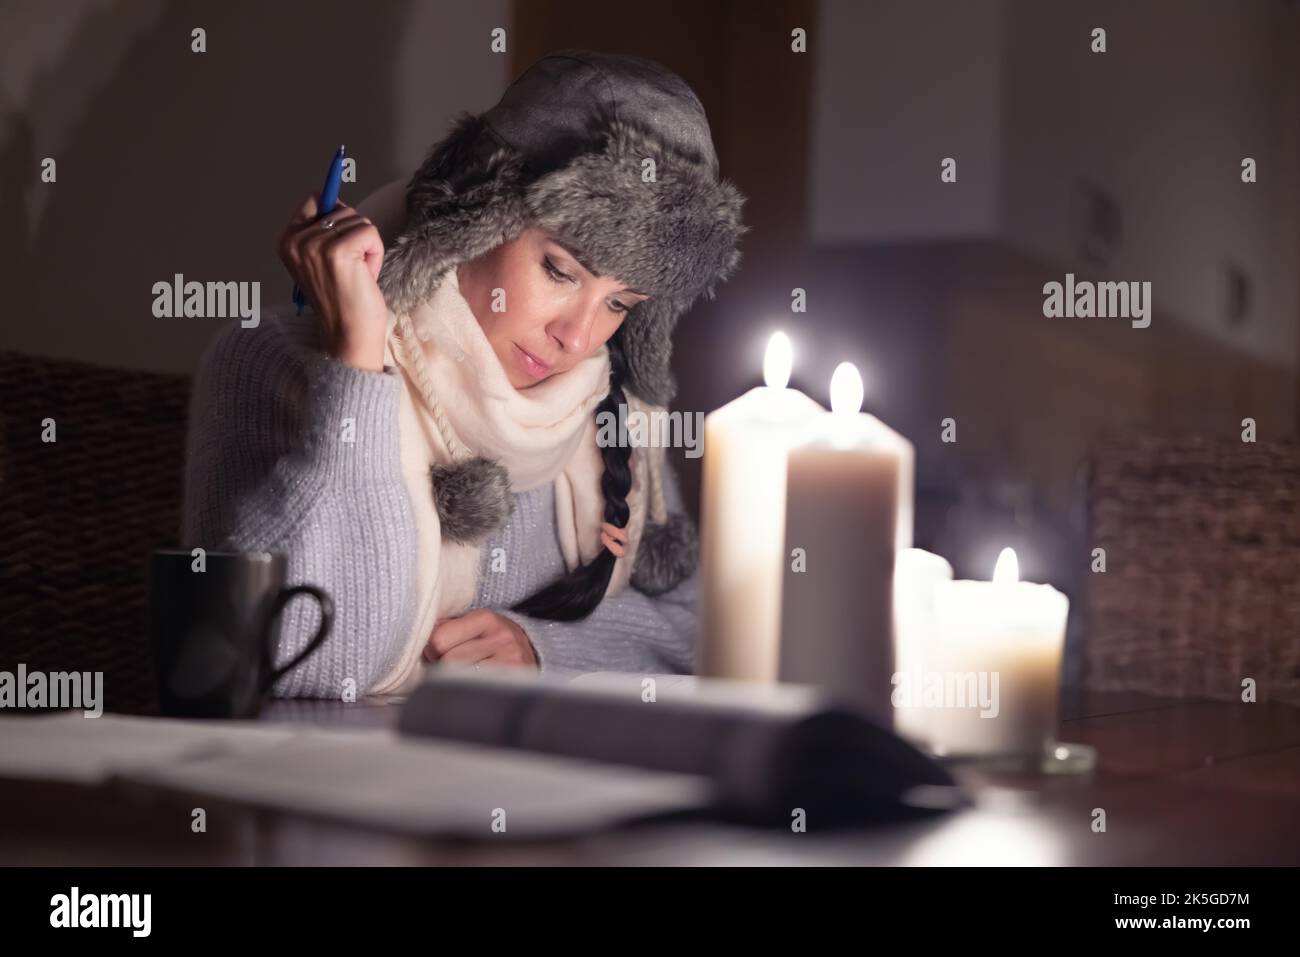 Elle est assise dans un chapeau d'hiver à un hoem qui fait de la paperasse sous les lumières des bougies alors que la Russie coupe ses approvisionnements en gaz et que l'Europe souffre d'une crise énergétique. Banque D'Images